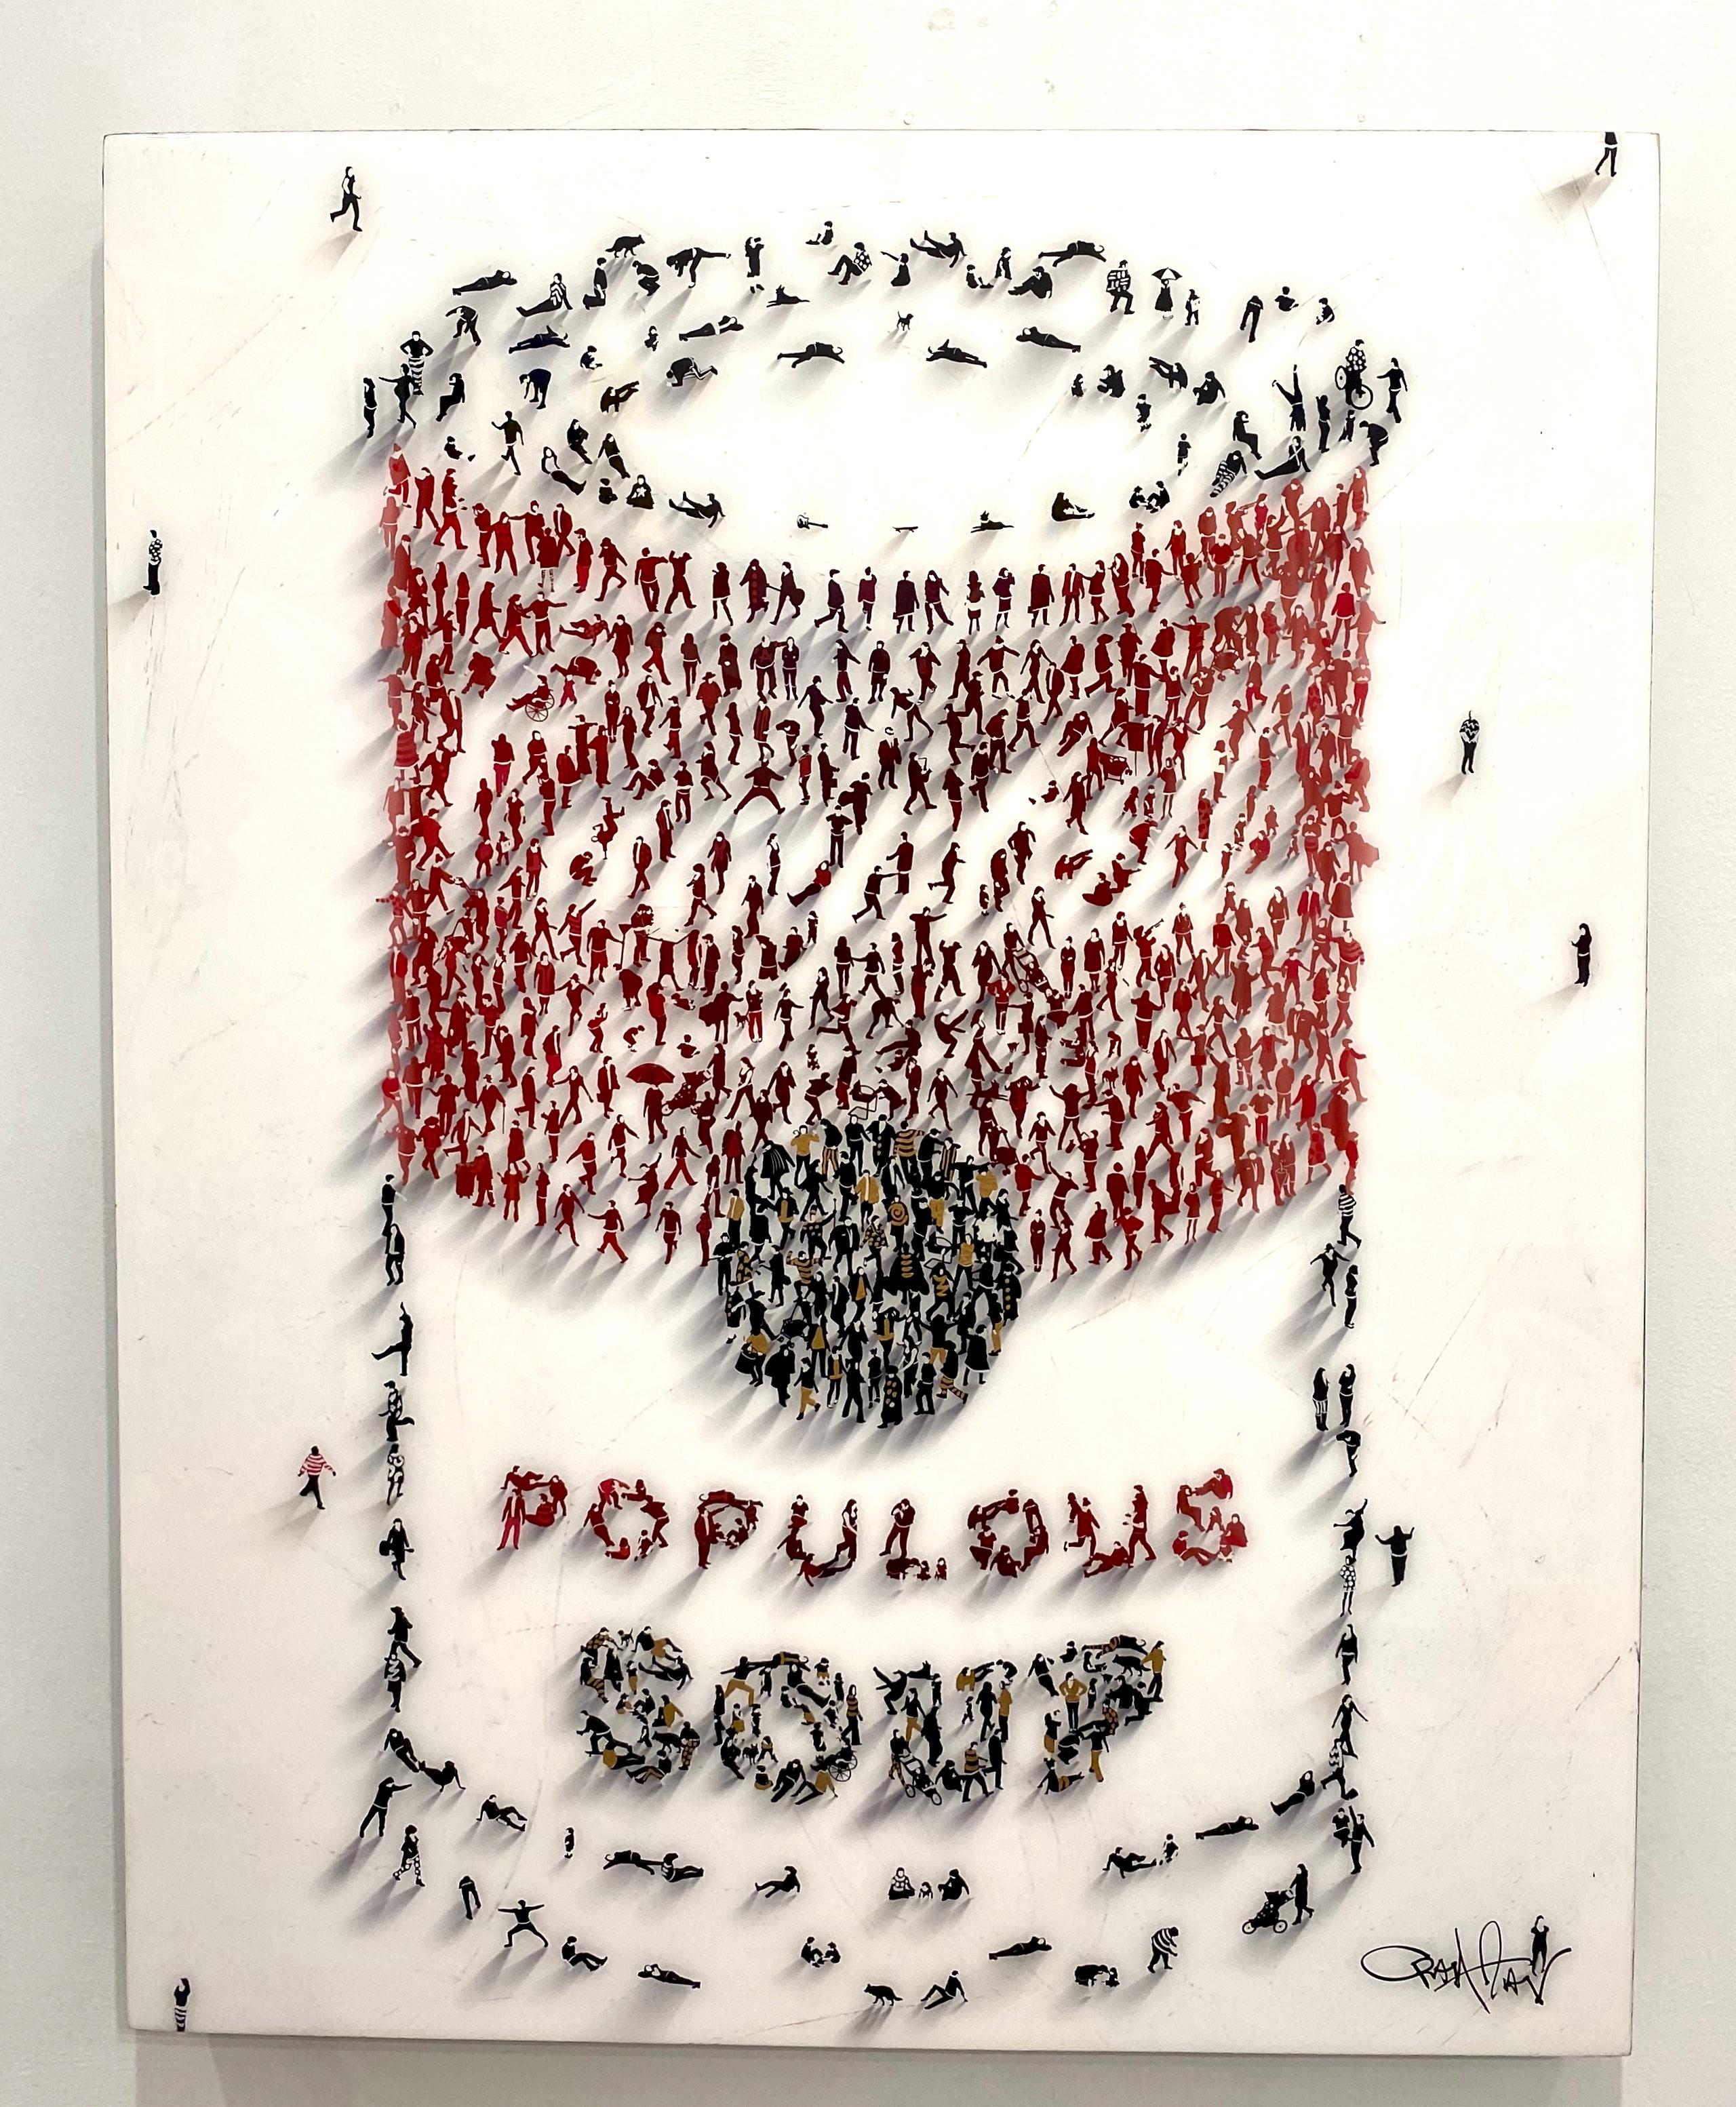 'Populus Homage' - "Populus Soup"